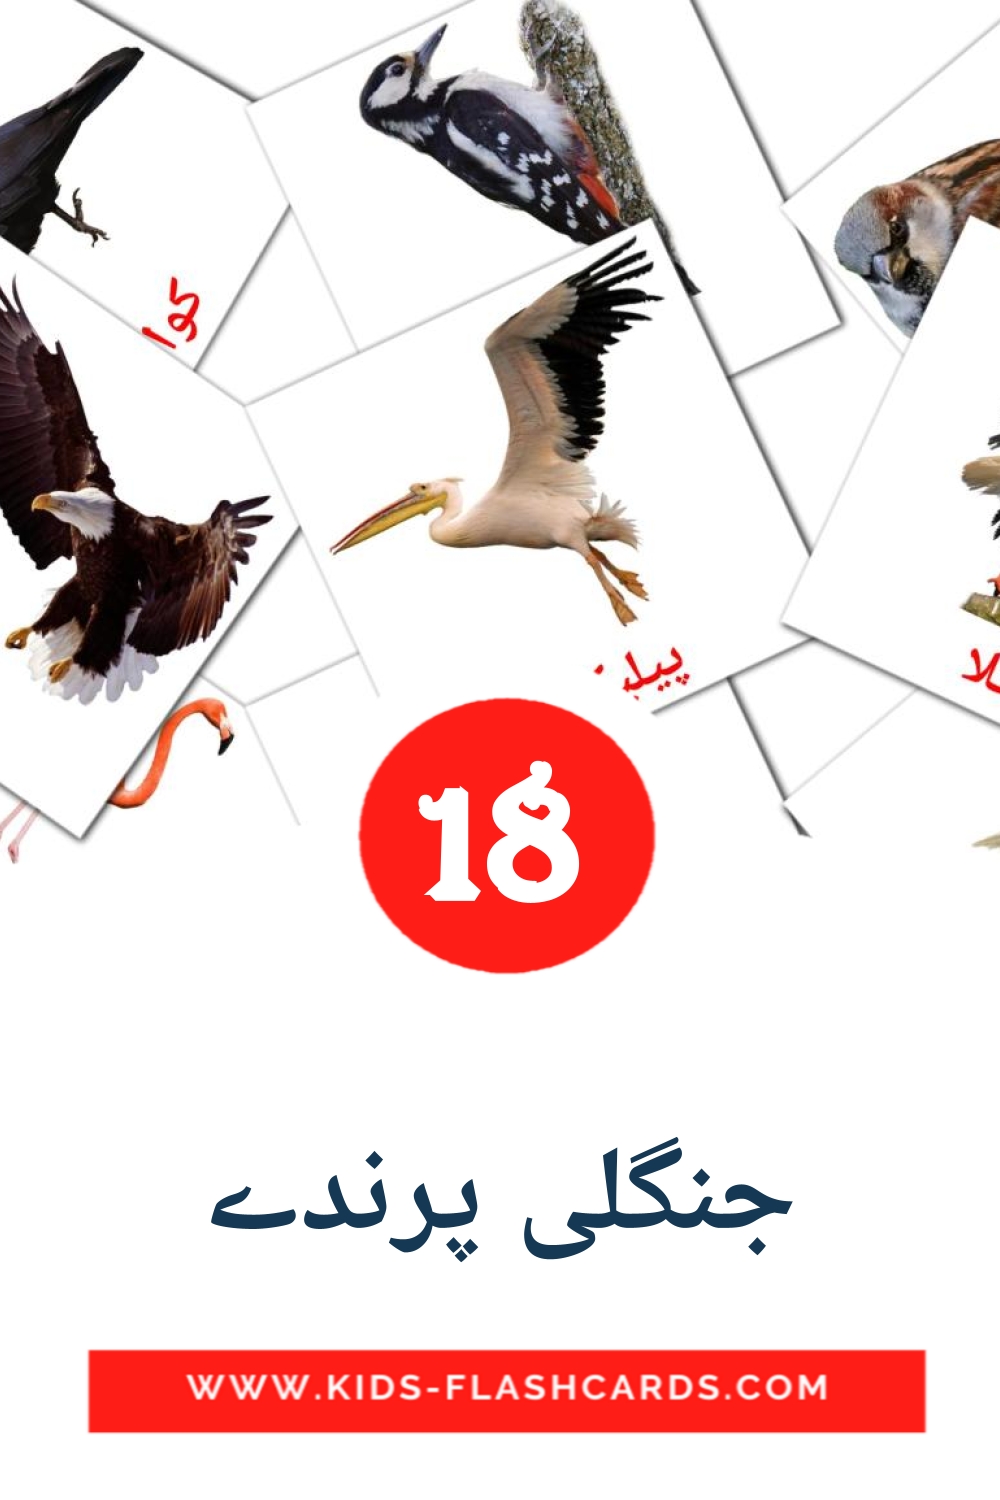 18 tarjetas didacticas de جنگلی پرندے para el jardín de infancia en urdu